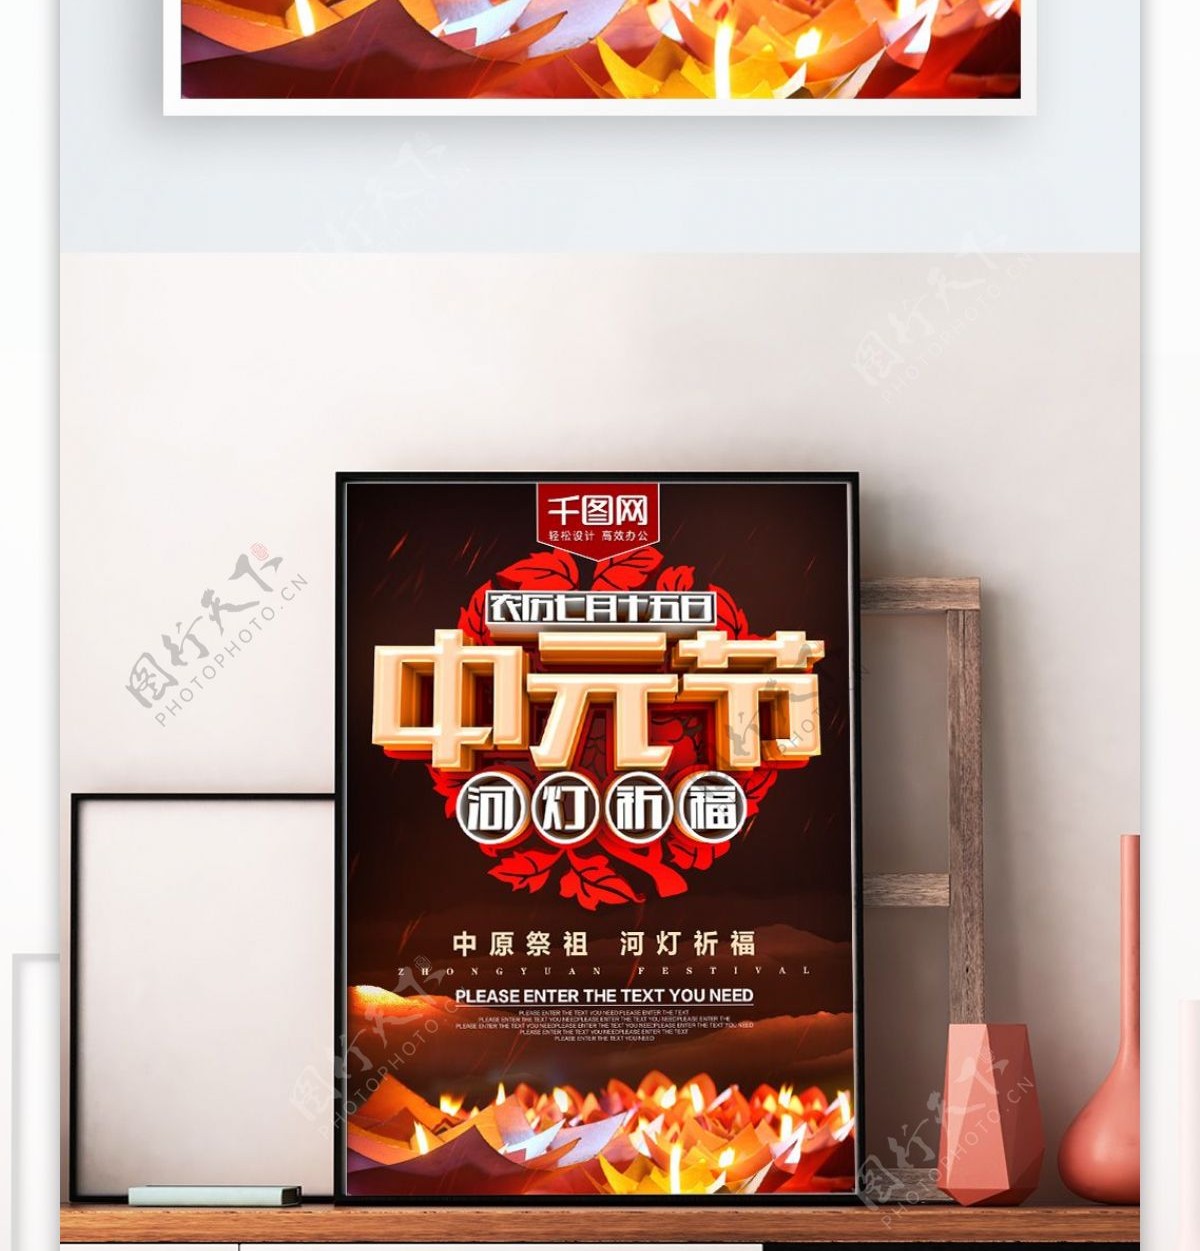 农历七月十五日中元节海报